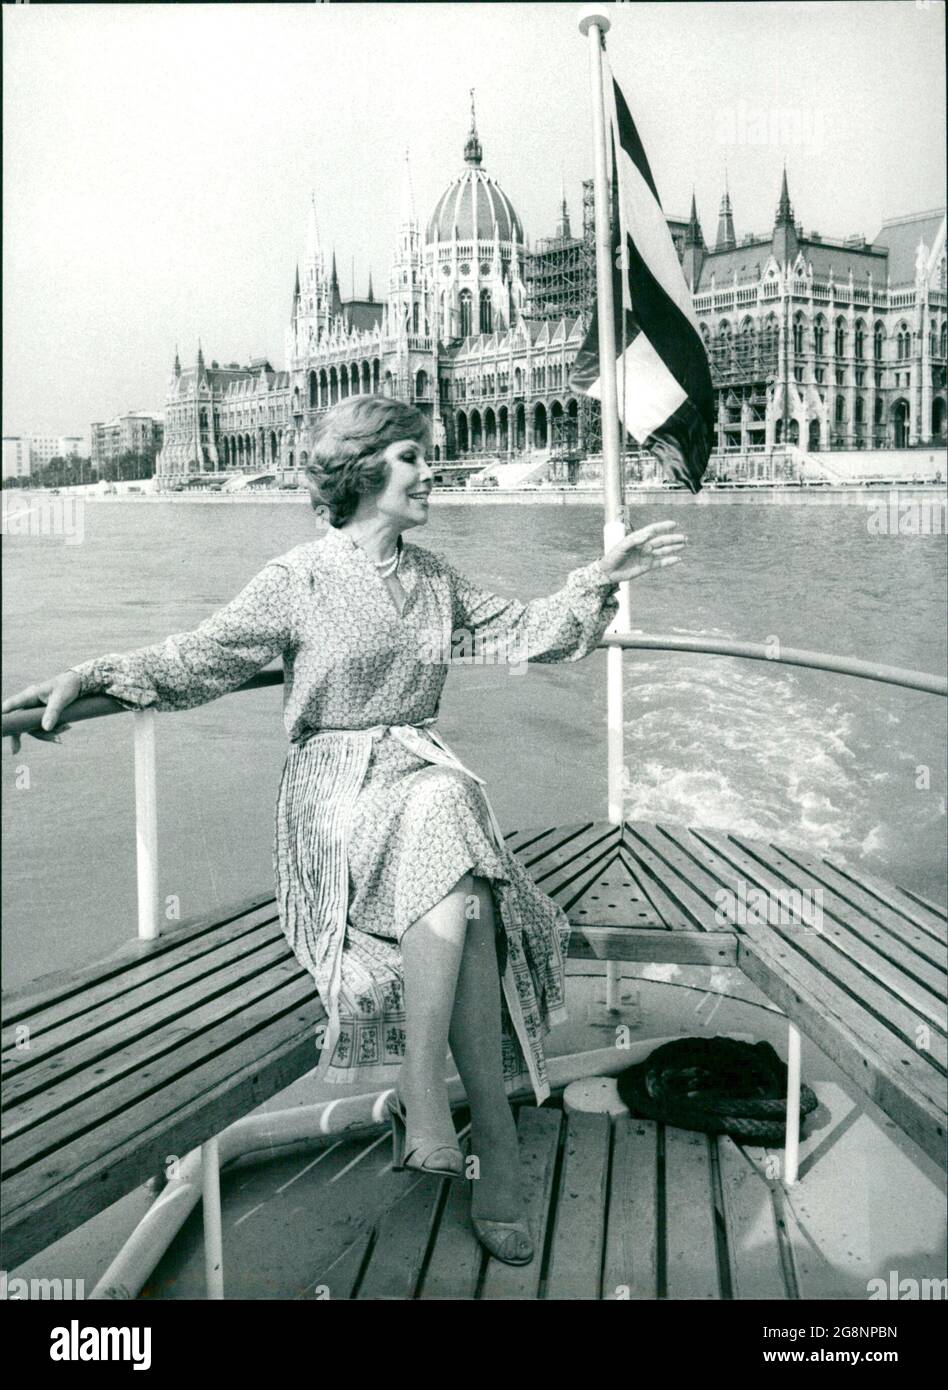 Ungarn Teil - Anneliese Rothenberger bei einer Fahrt auf der Donau. Im Hintergrund sieht man den Regierungspalast von Budapest. Stock Photo